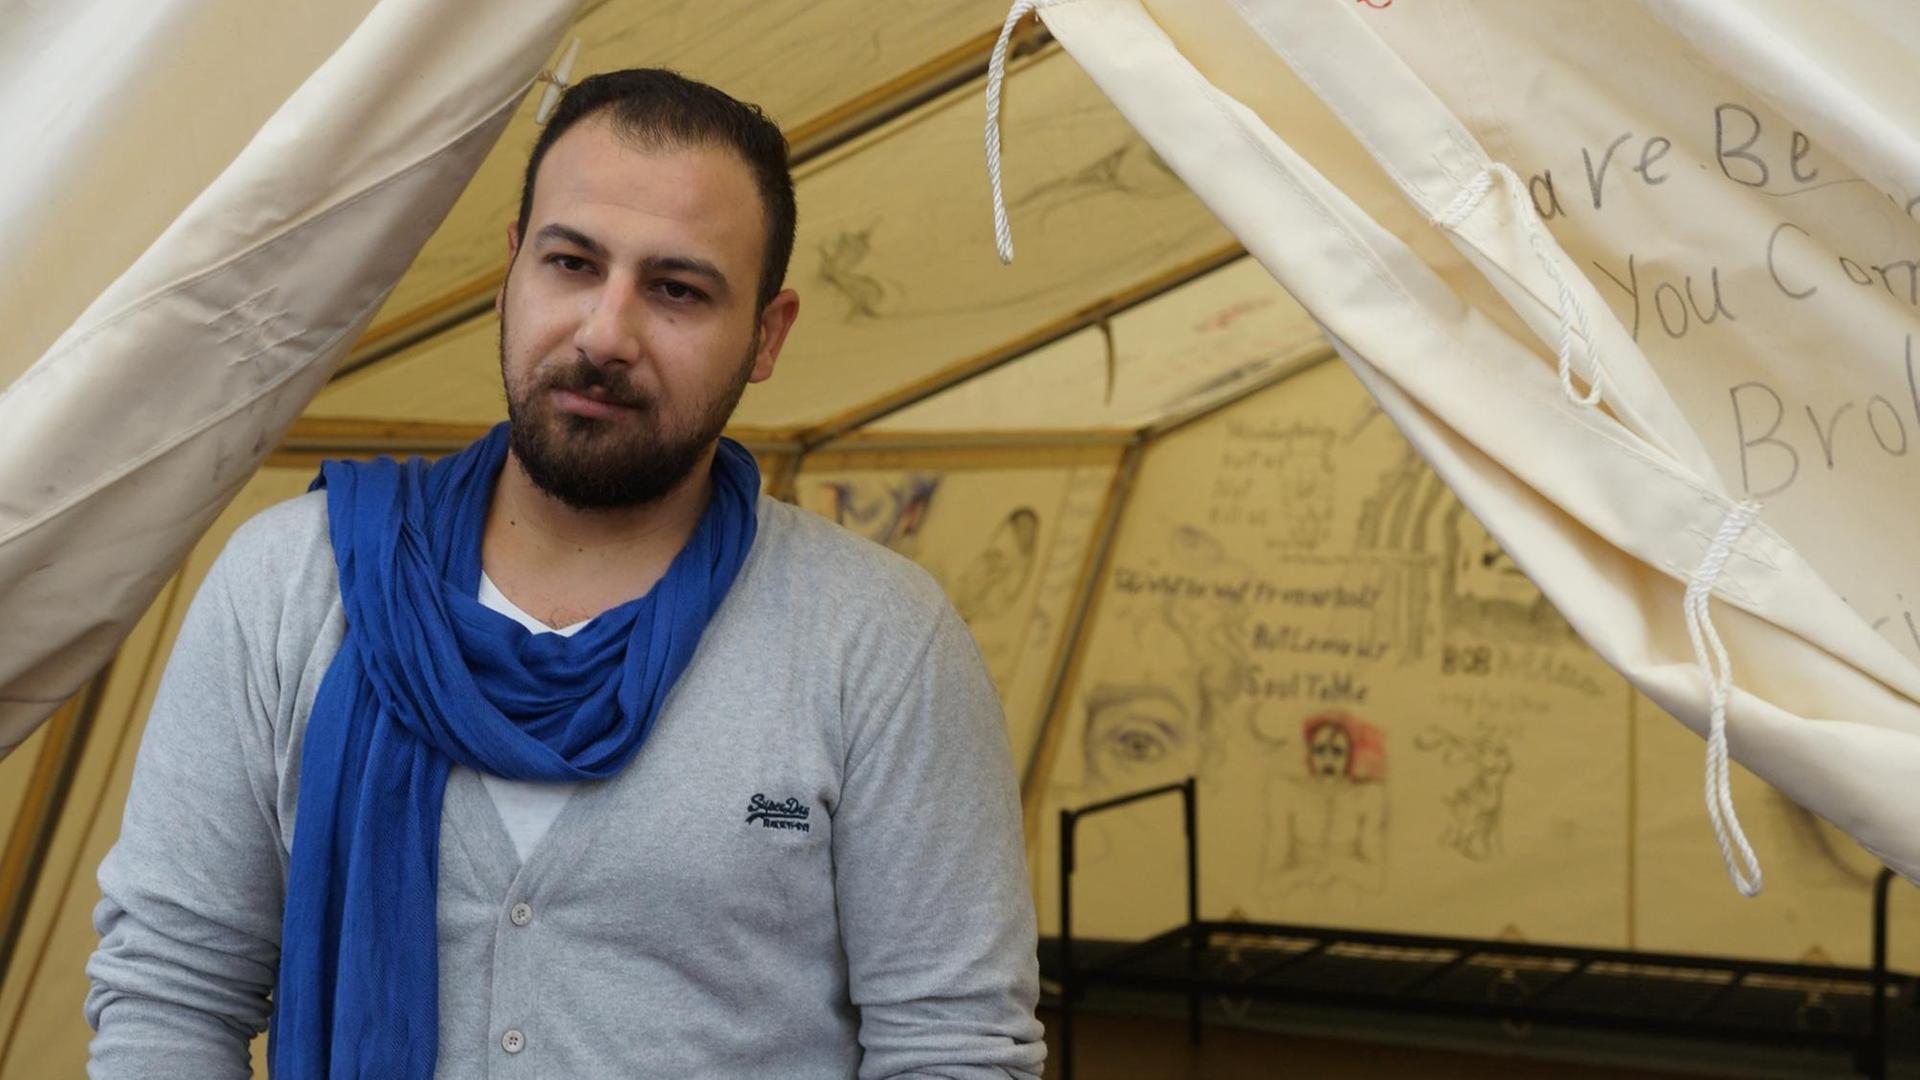 Der syrische Bildhauer Eyad Alkhateeb vor dem Zelt seiner Ausstellung "Eyad Alkhateeb: An Inside Look".